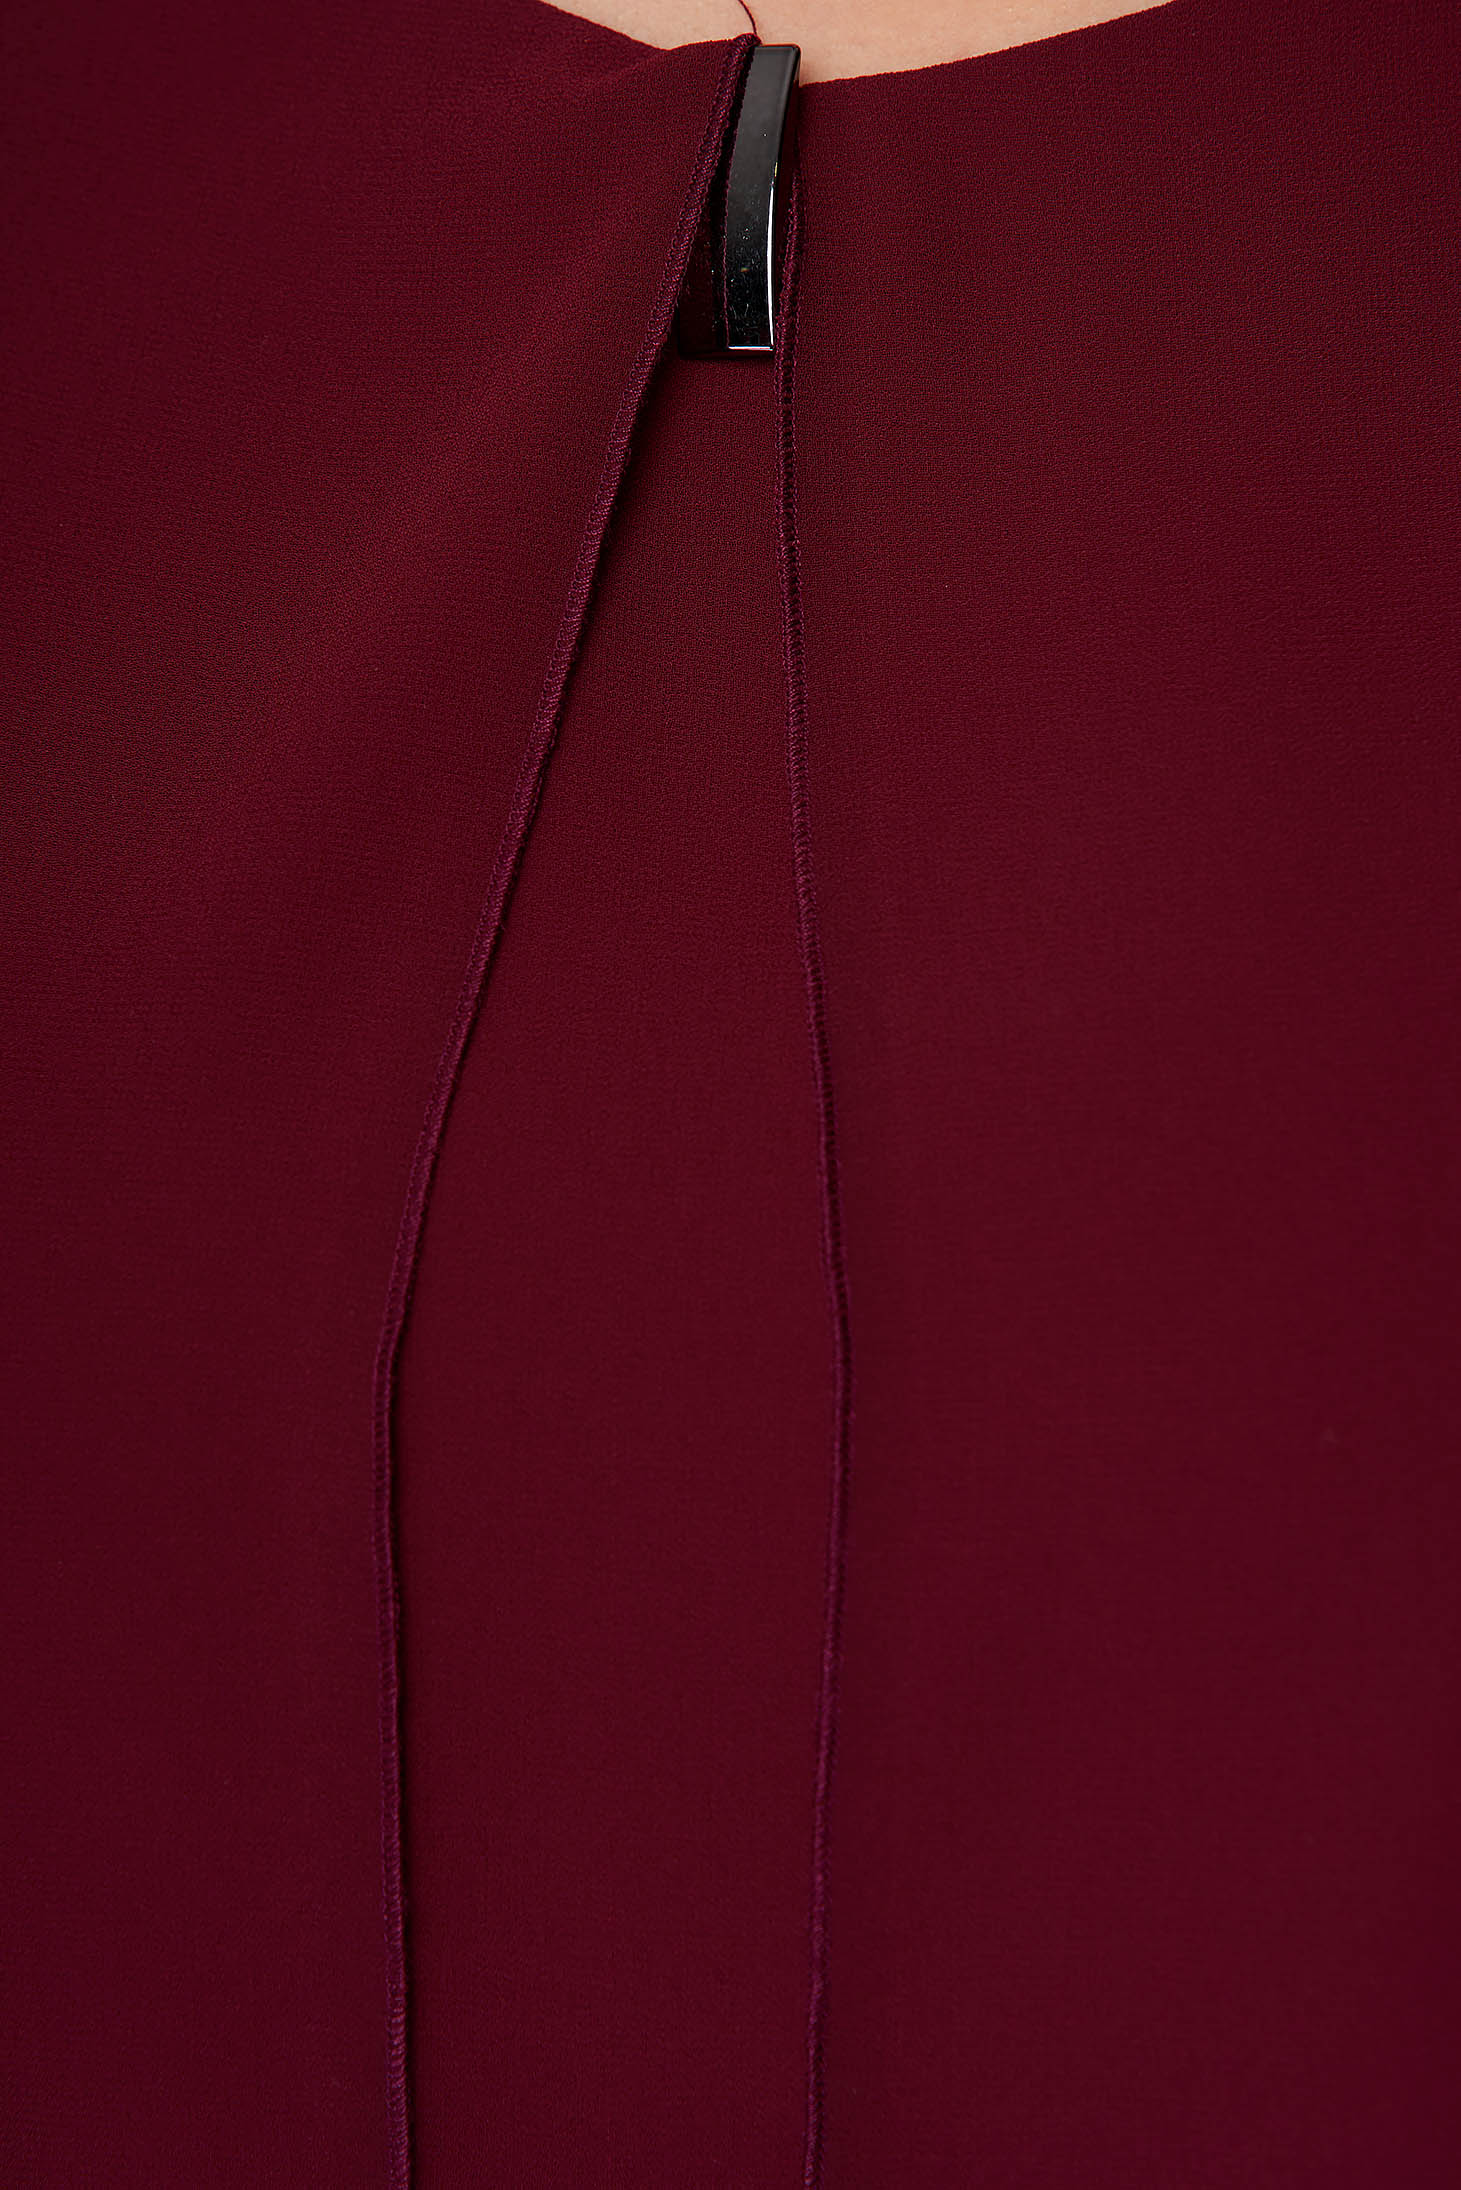 Burgundy irodai rövid bő szabású asszimmetrikus női blúz muszlinból fém kiegészítőkkel ellátott 4 - StarShinerS.hu